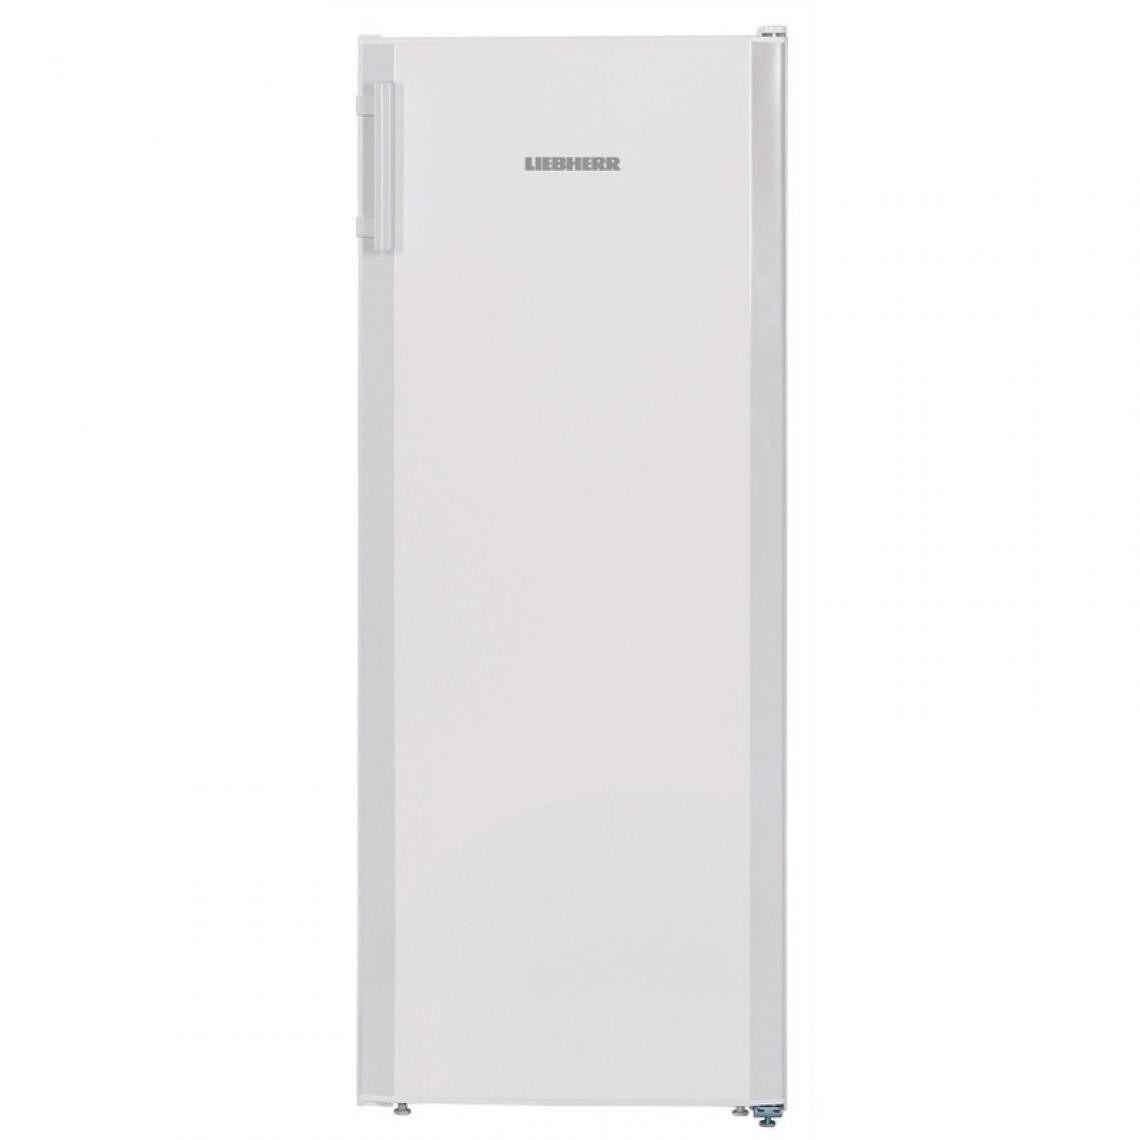 Liebherr - Réfrigérateur tout Utile, Compartiment 4 Étoiles, 250L - LIEBHERR - R600a1 PorteVitrée/battante - Réfrigérateur